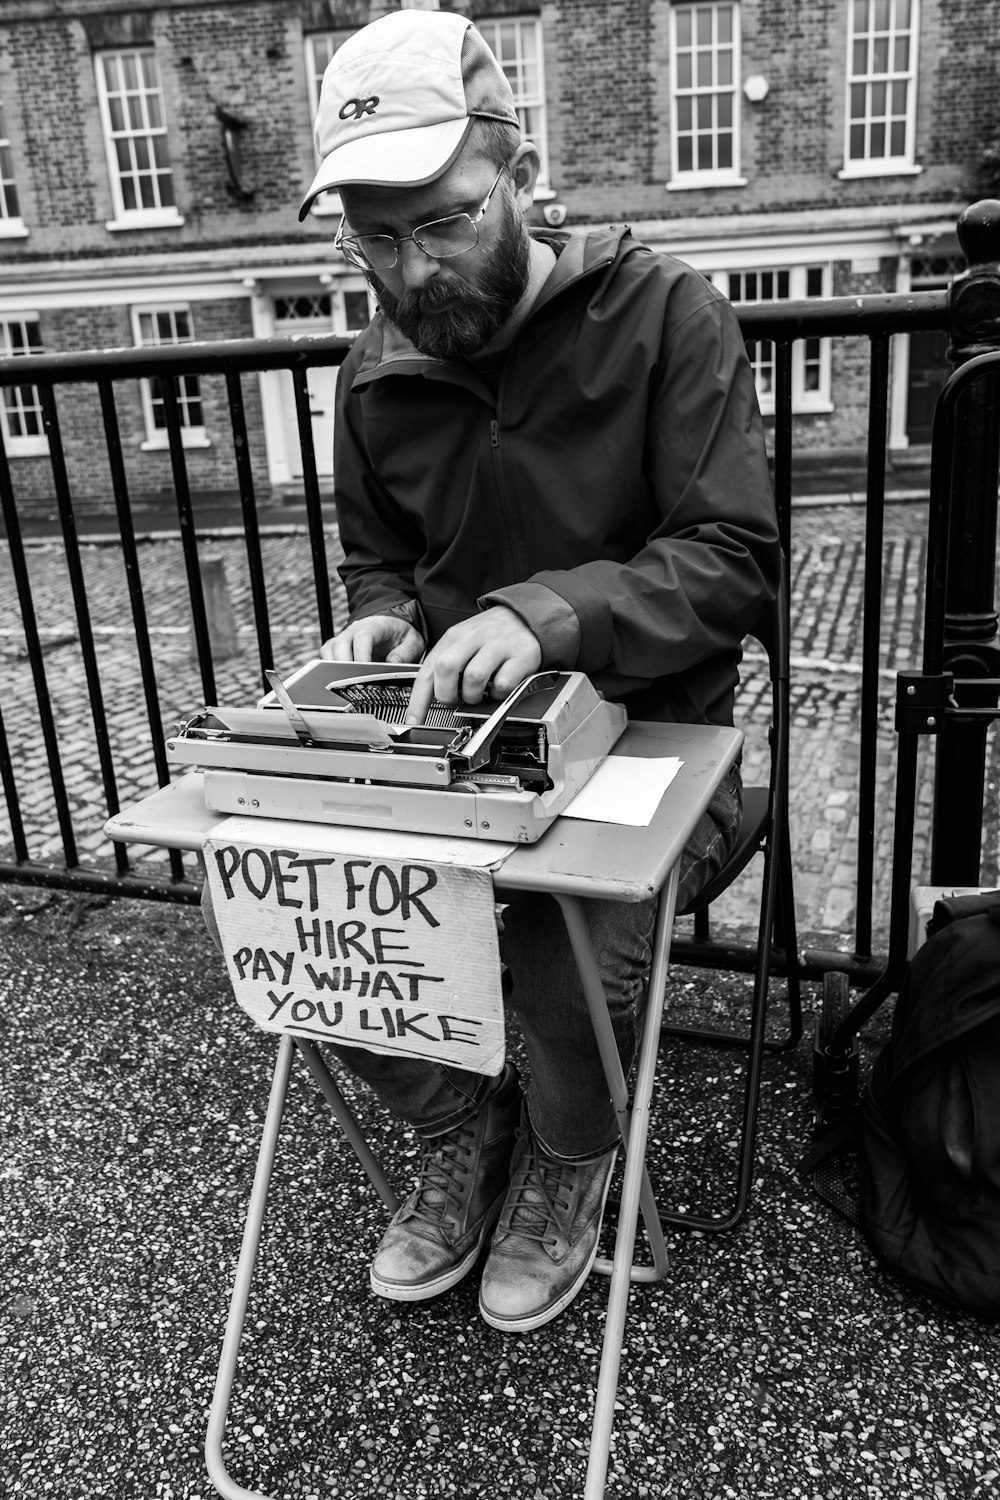 fotografia em tons de cinza do homem sentado e usando máquina de escrever